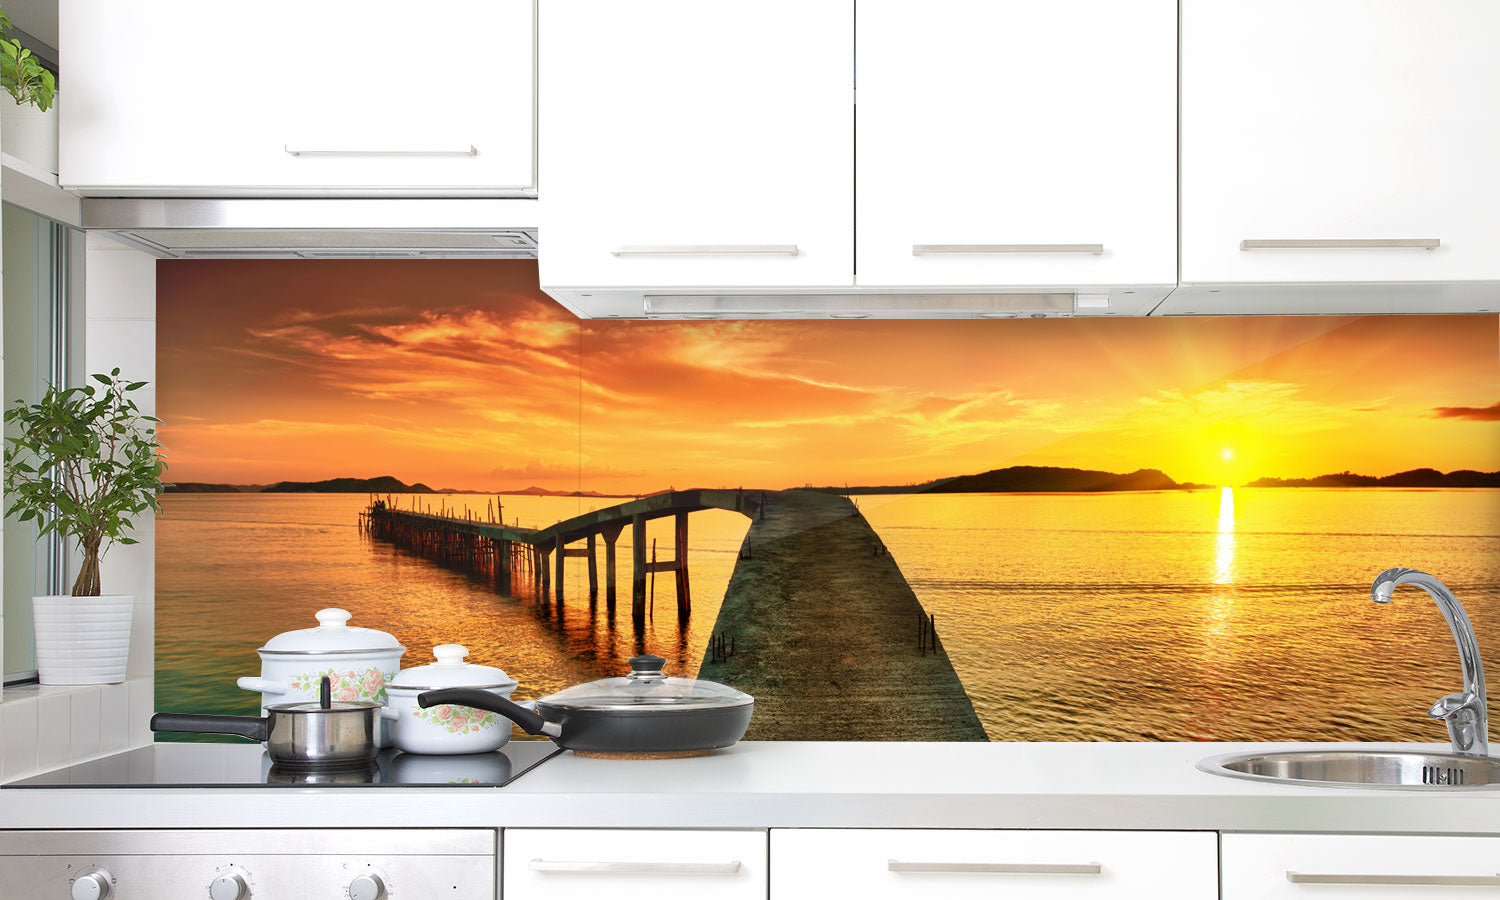 Paneli za kuhinje Sunset panorama -  Stakleni / PVC ploče / Pleksiglas -  sa printom za kuhinju, Zidne obloge PKU204